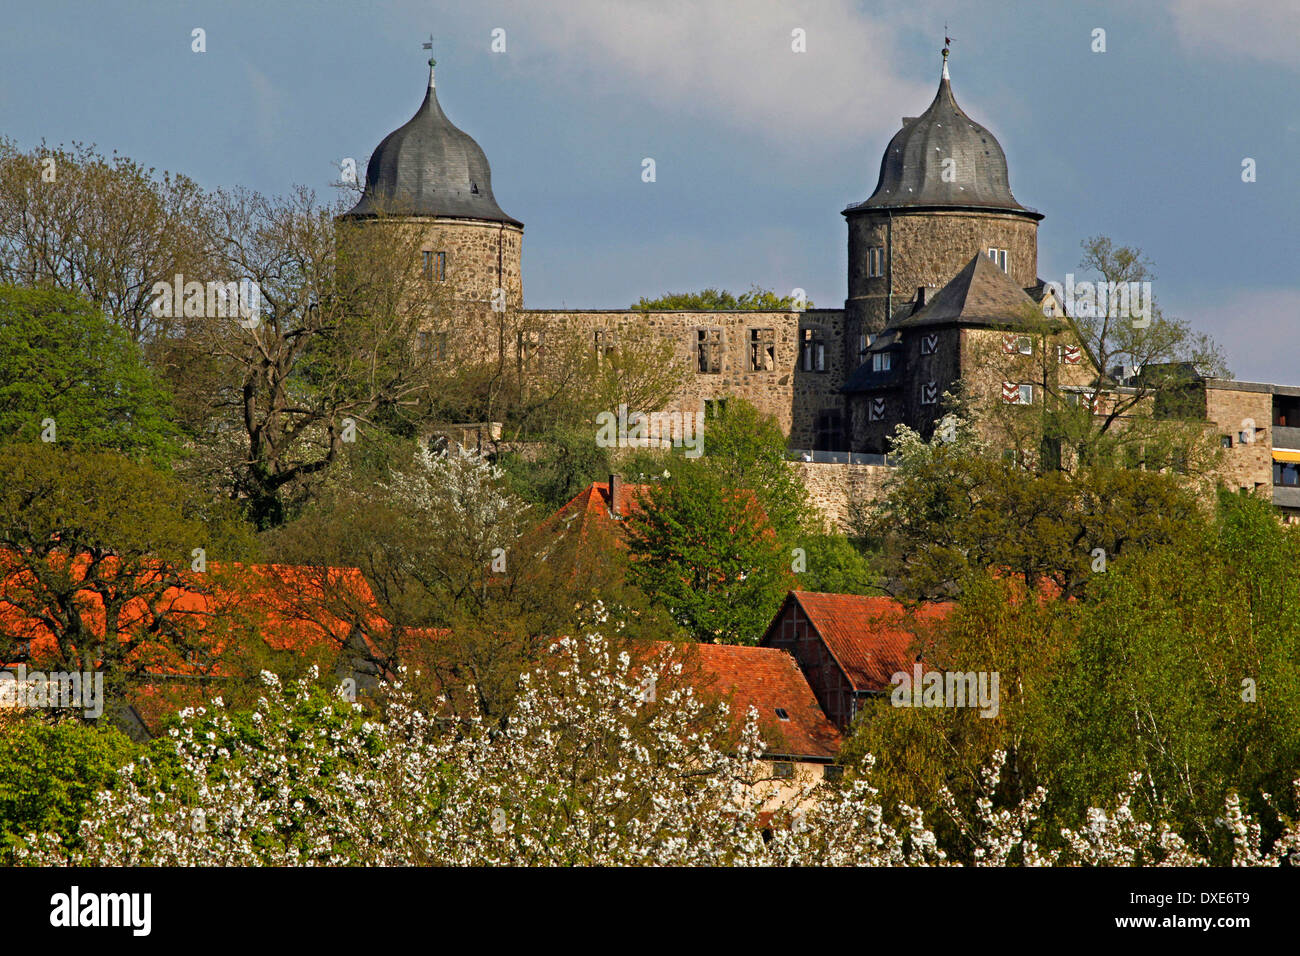 Le château de Sababurg Hofgeismar district de Hesse Kassel Allemagne / La 'Sleeping Beauty' château de Frères Grimm fame Reinhardswald Banque D'Images